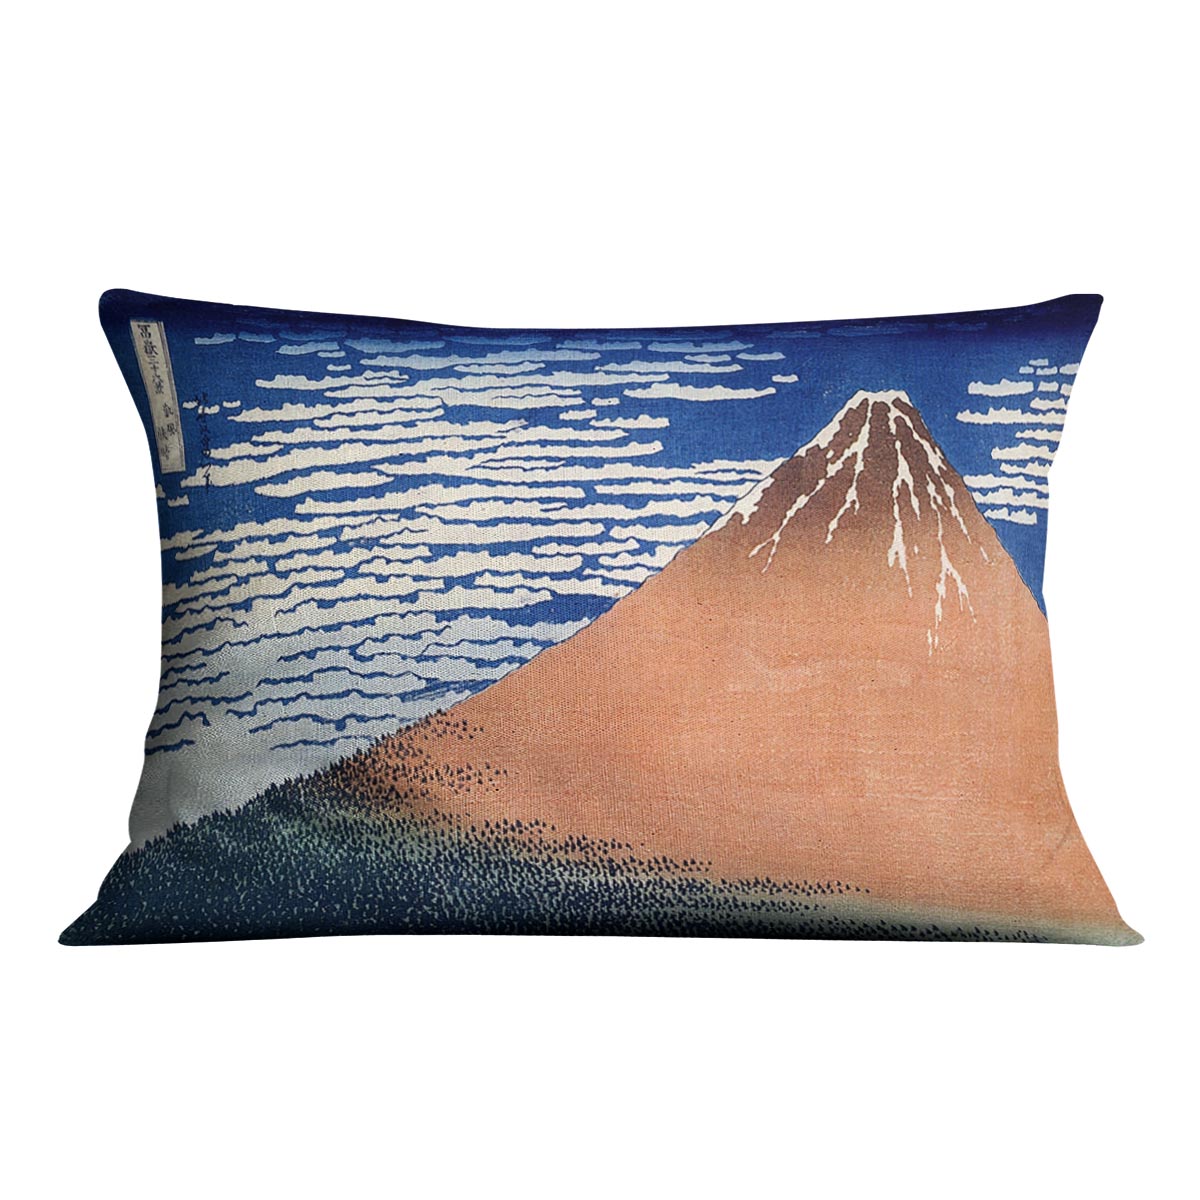 Mount Fuji by Hokusai Cushion